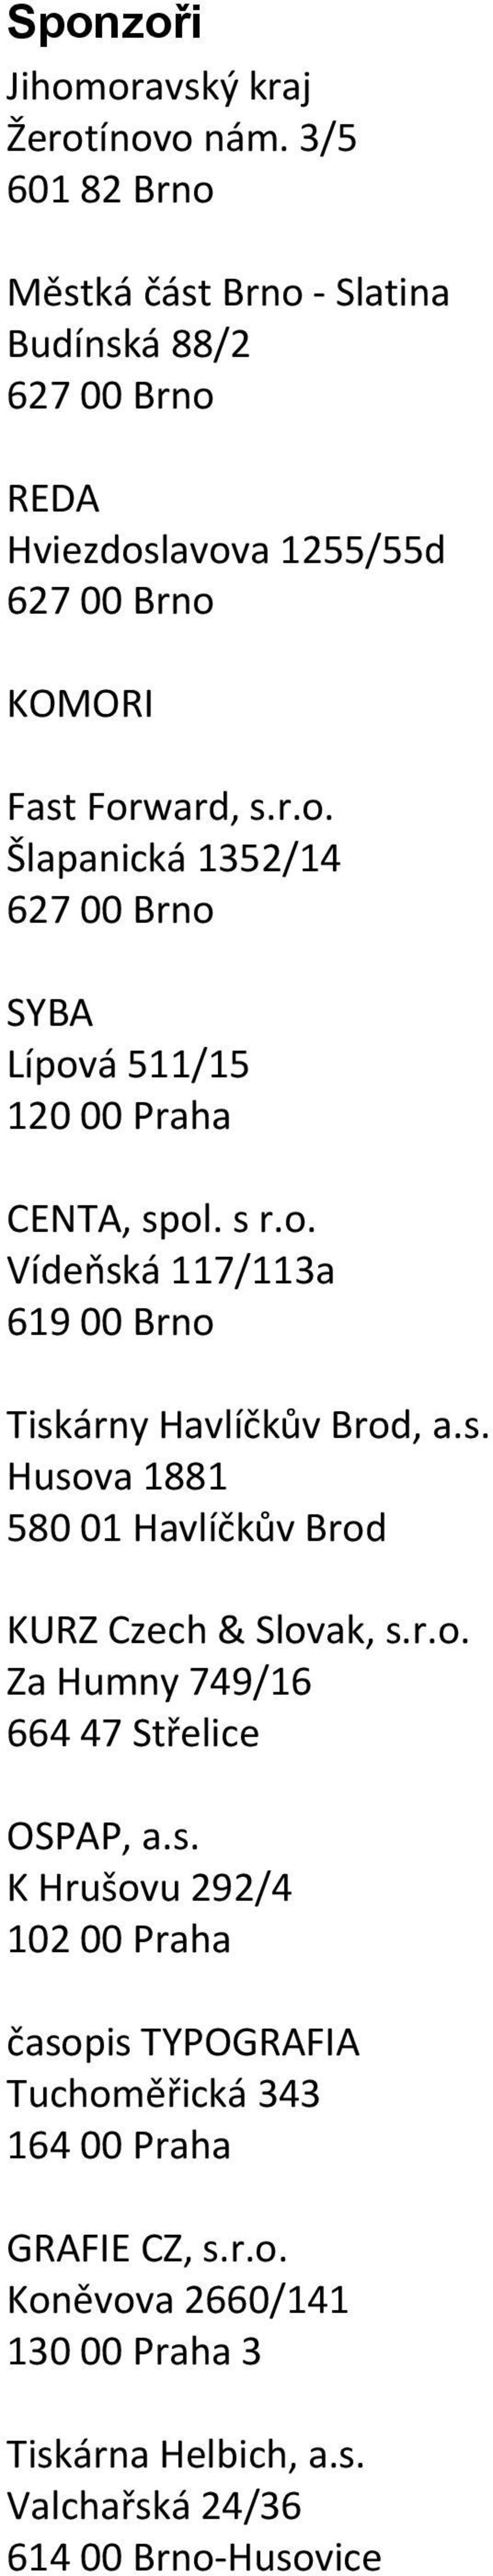 s r.o. Vídeňská 117/113a 619 00 Brno Tiskárny Havlíčkův Brod, a.s. Husova 1881 580 01 Havlíčkův Brod KURZ Czech & Slovak, s.r.o. Za Humny 749/16 664 47 Střelice OSPAP, a.